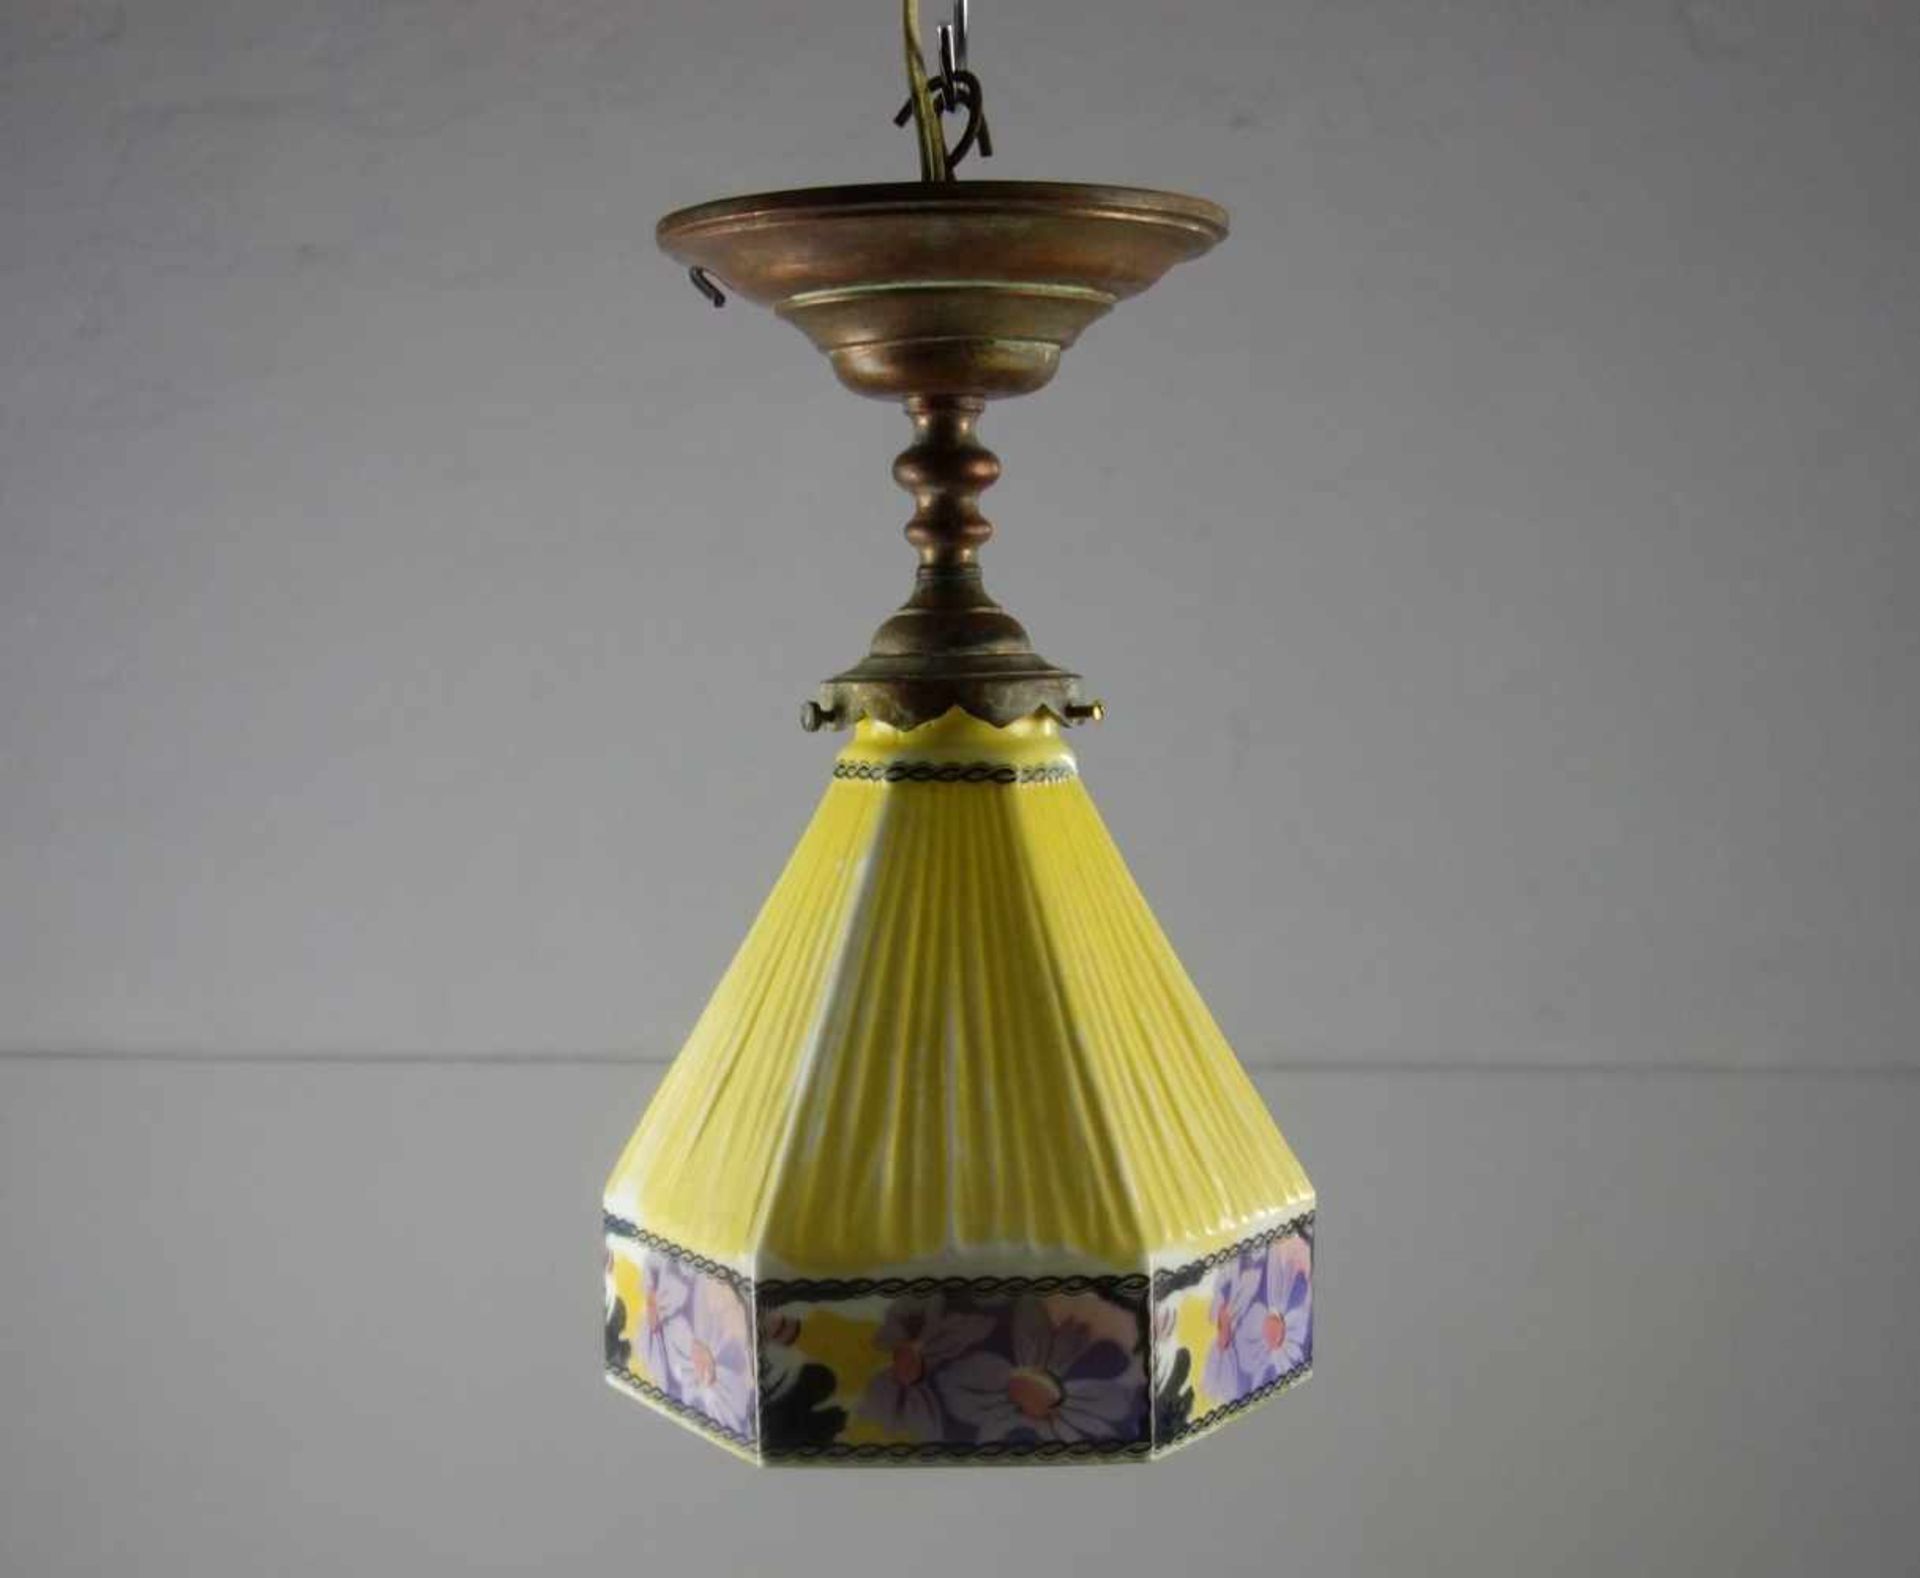 JUGENDSTIL - DECKENLAMPE / art nouveau lamp, um 1900. Profilierte und bronzierte Metallmontur mit